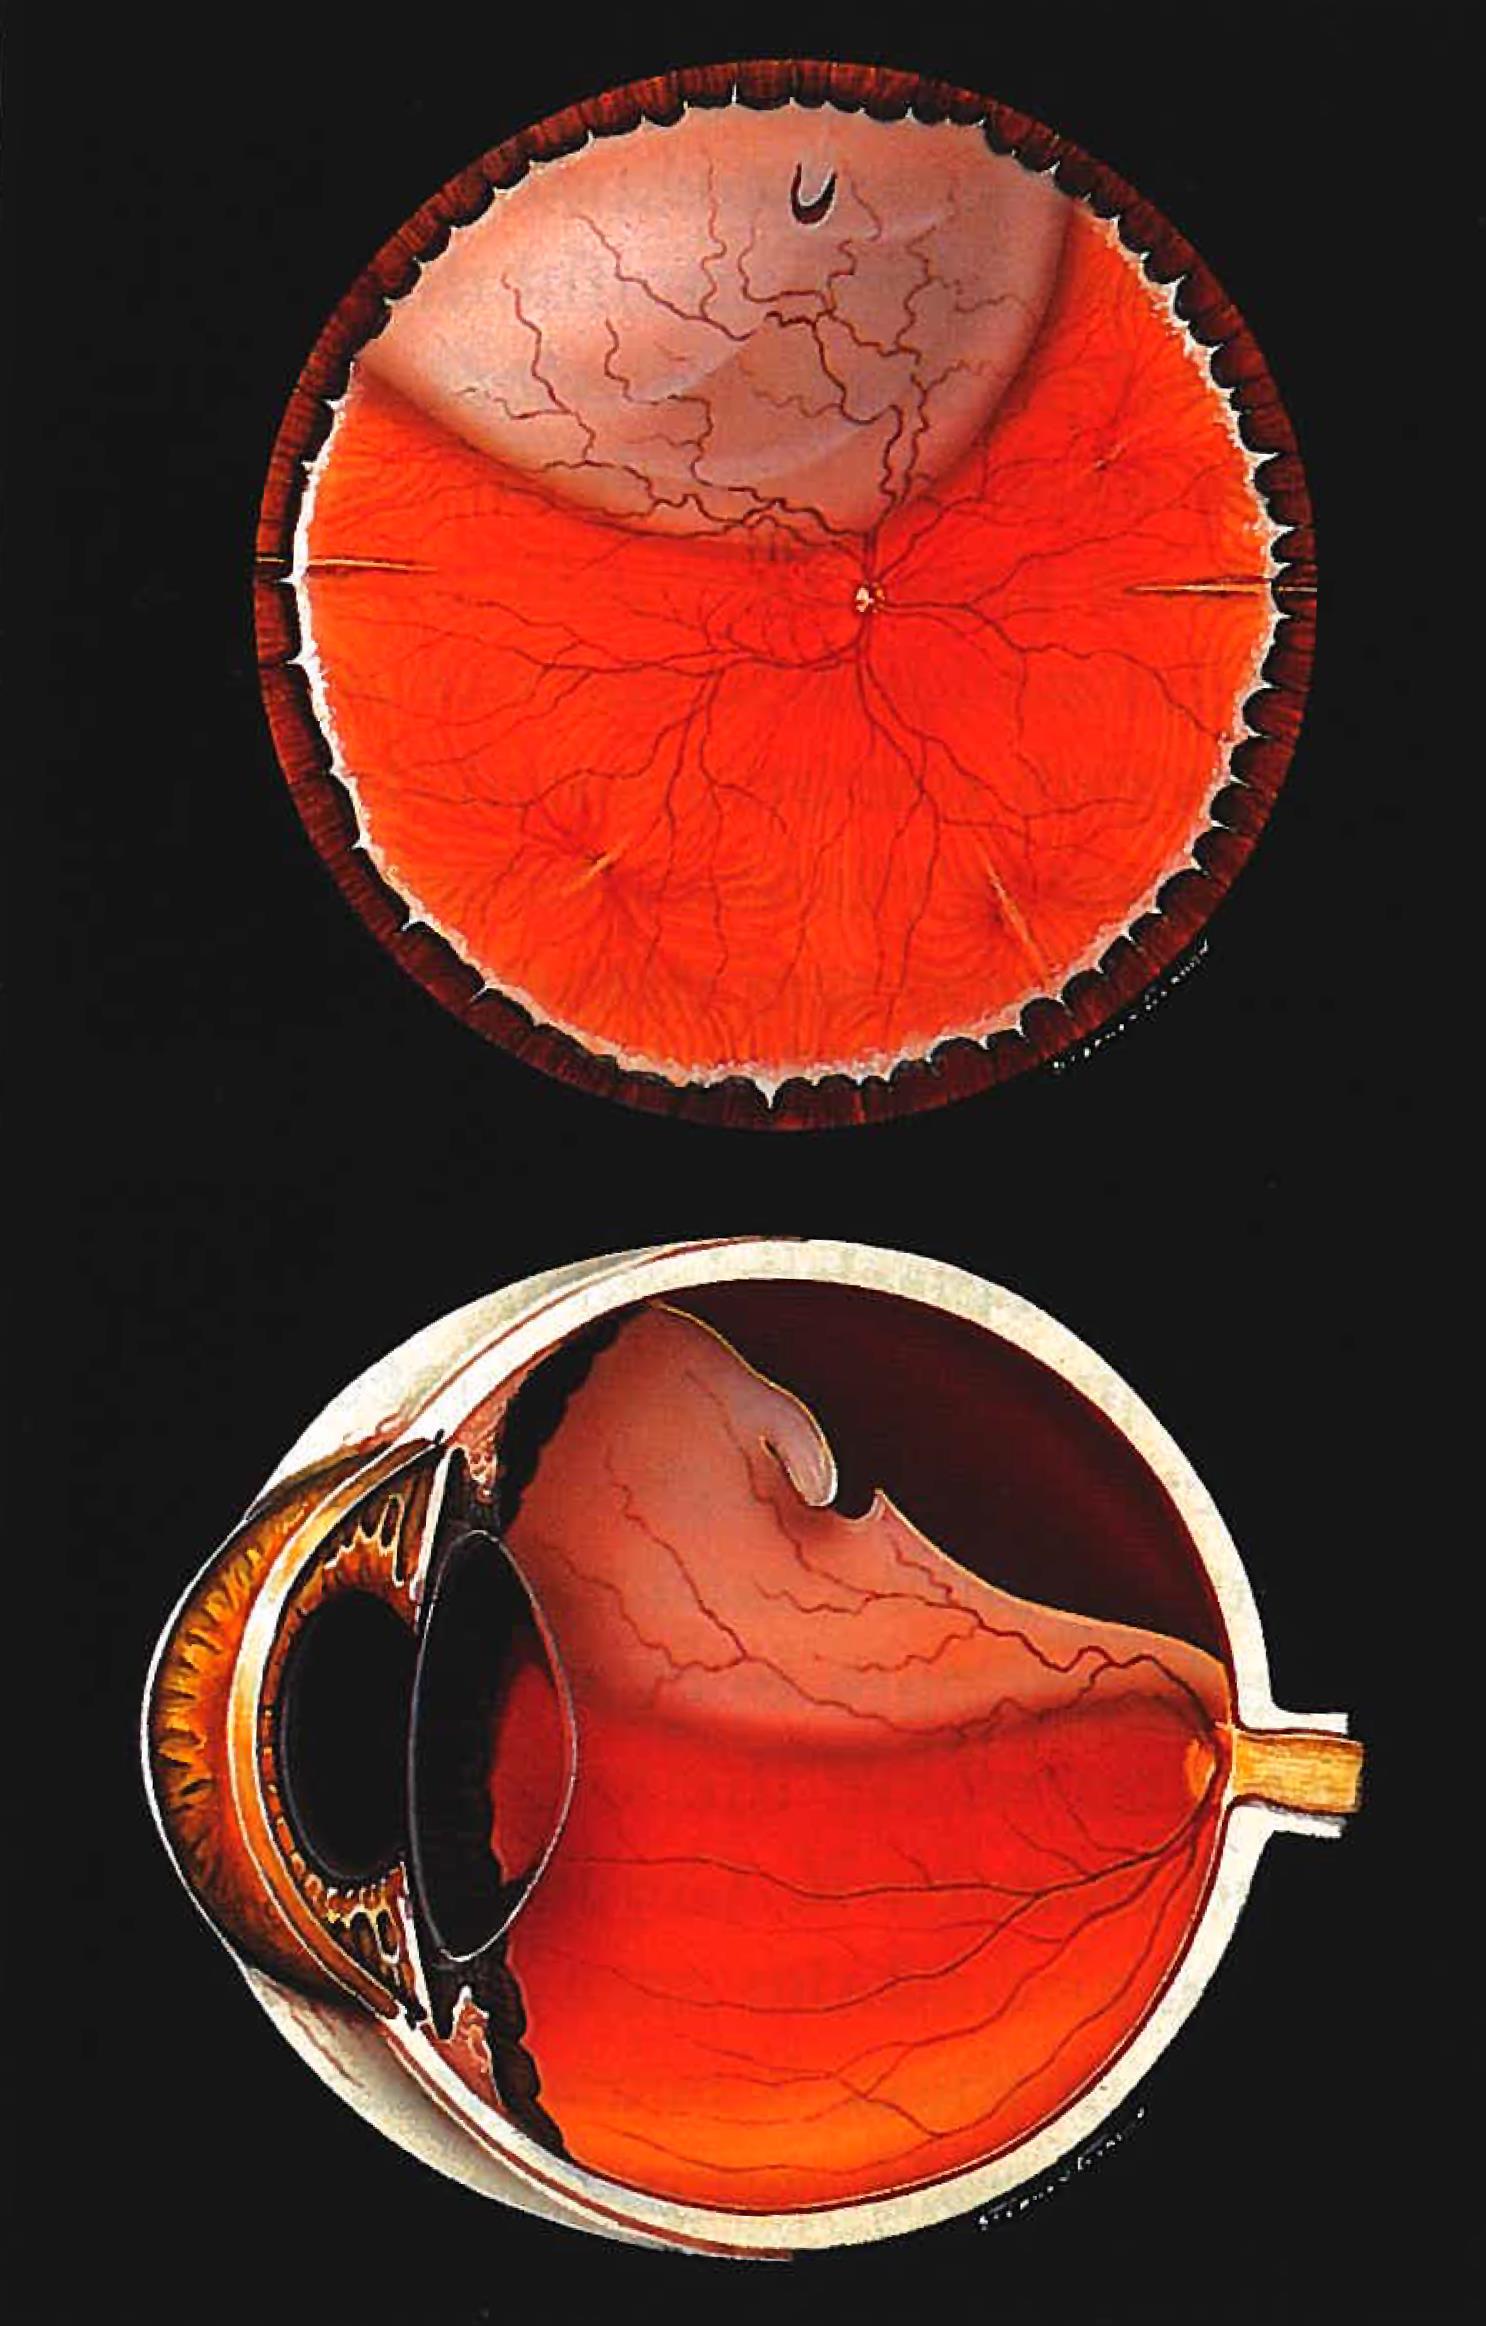 torn retina vision